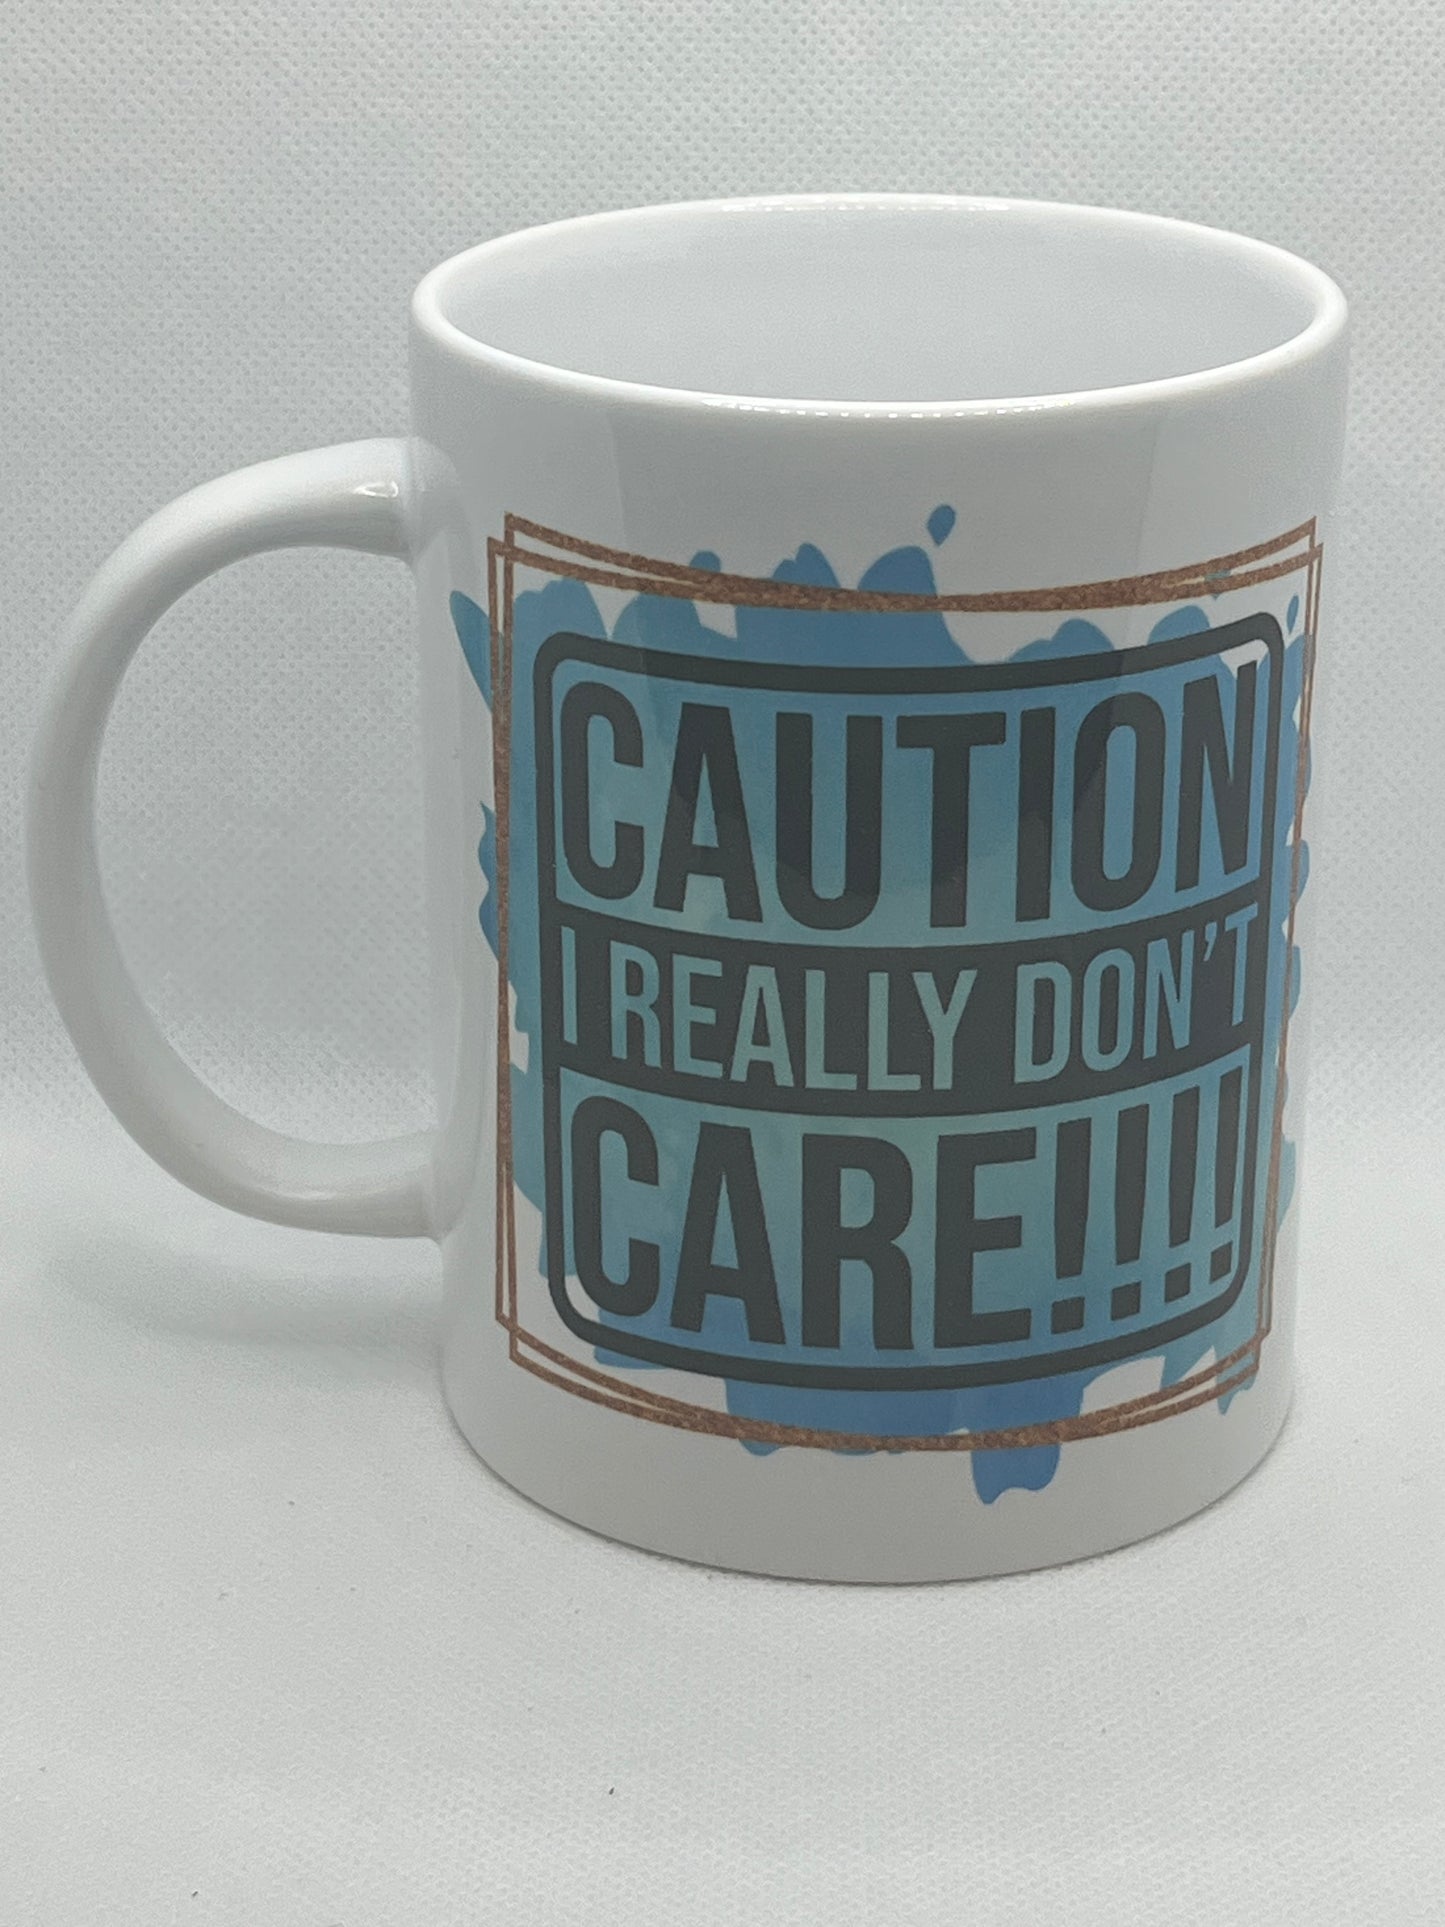 "Caution! I Really Don't Care" Sarcasm Mug-15 Oz.